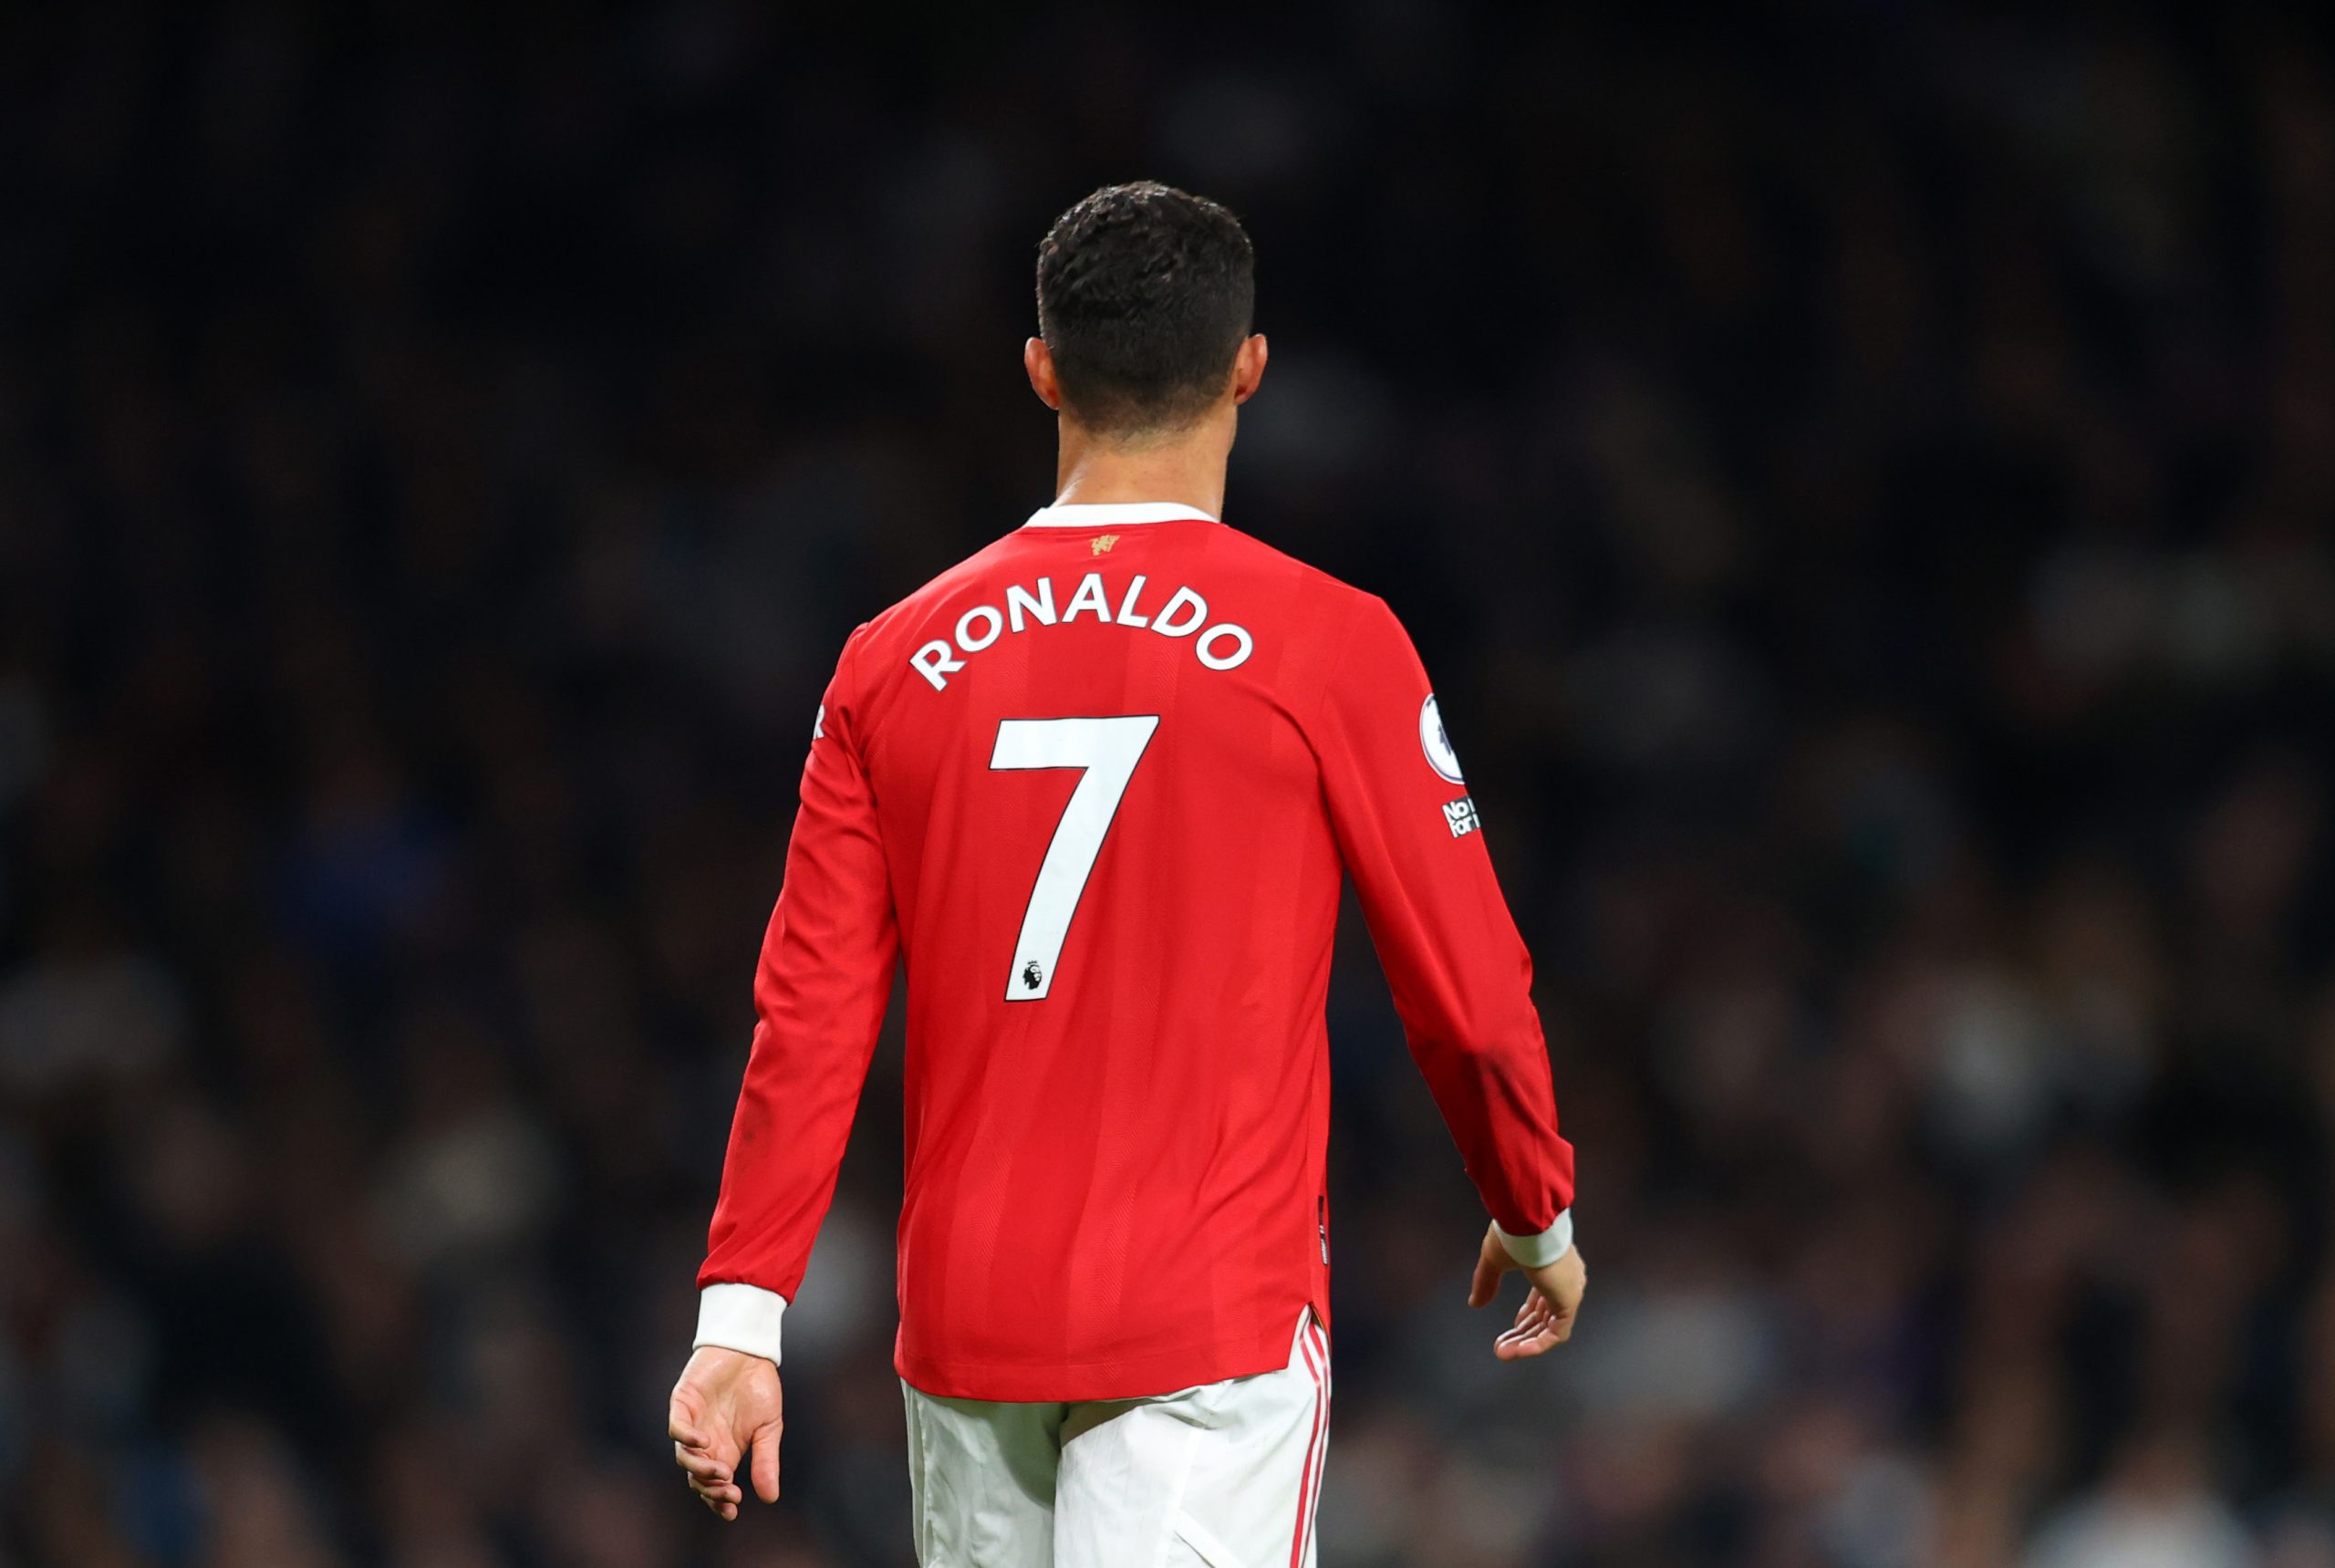 Cristiano Ronaldo of Manchester United.